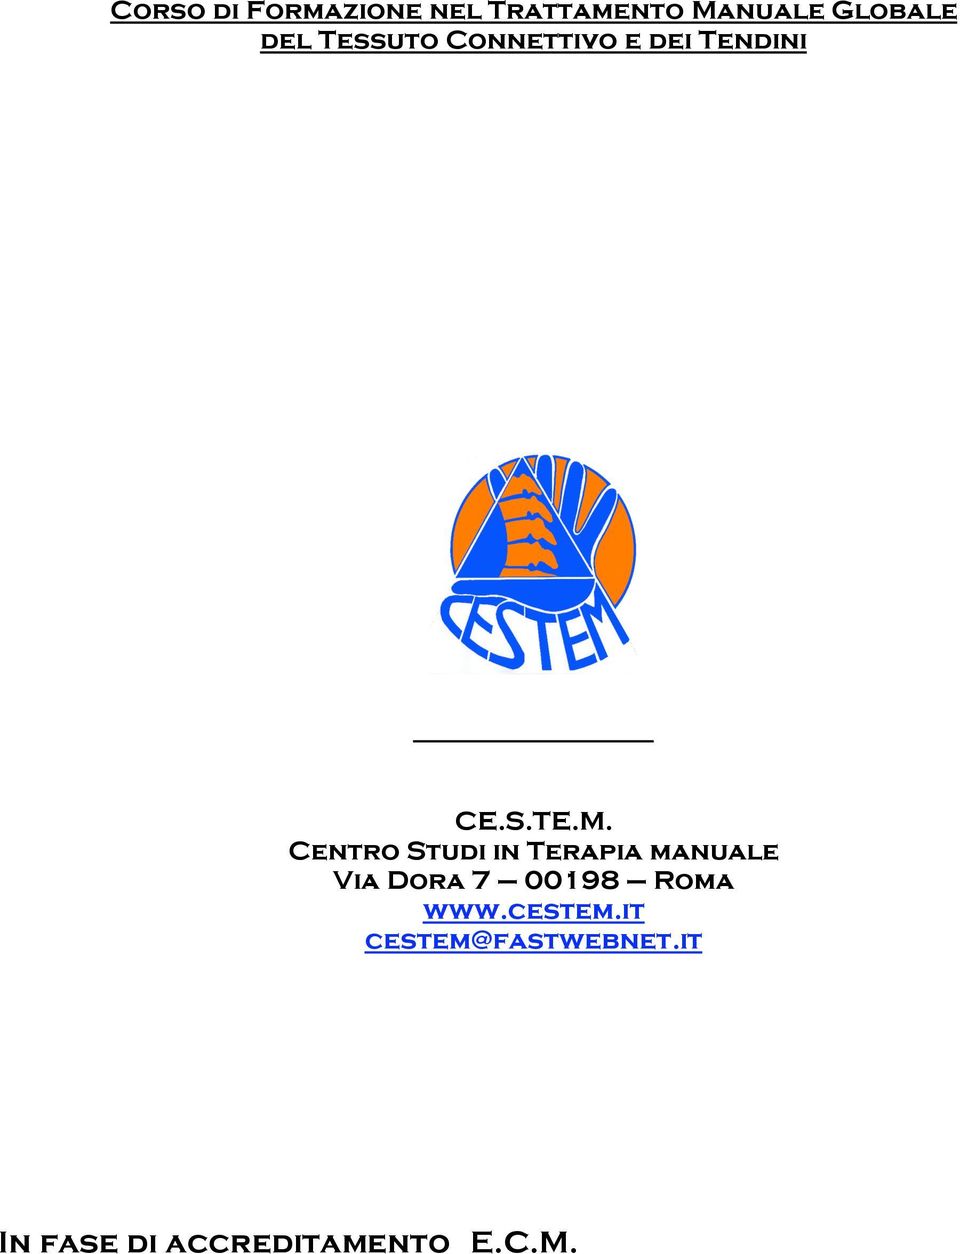 Centro Studi in Terapia manuale Via Dora 7 00198 Roma